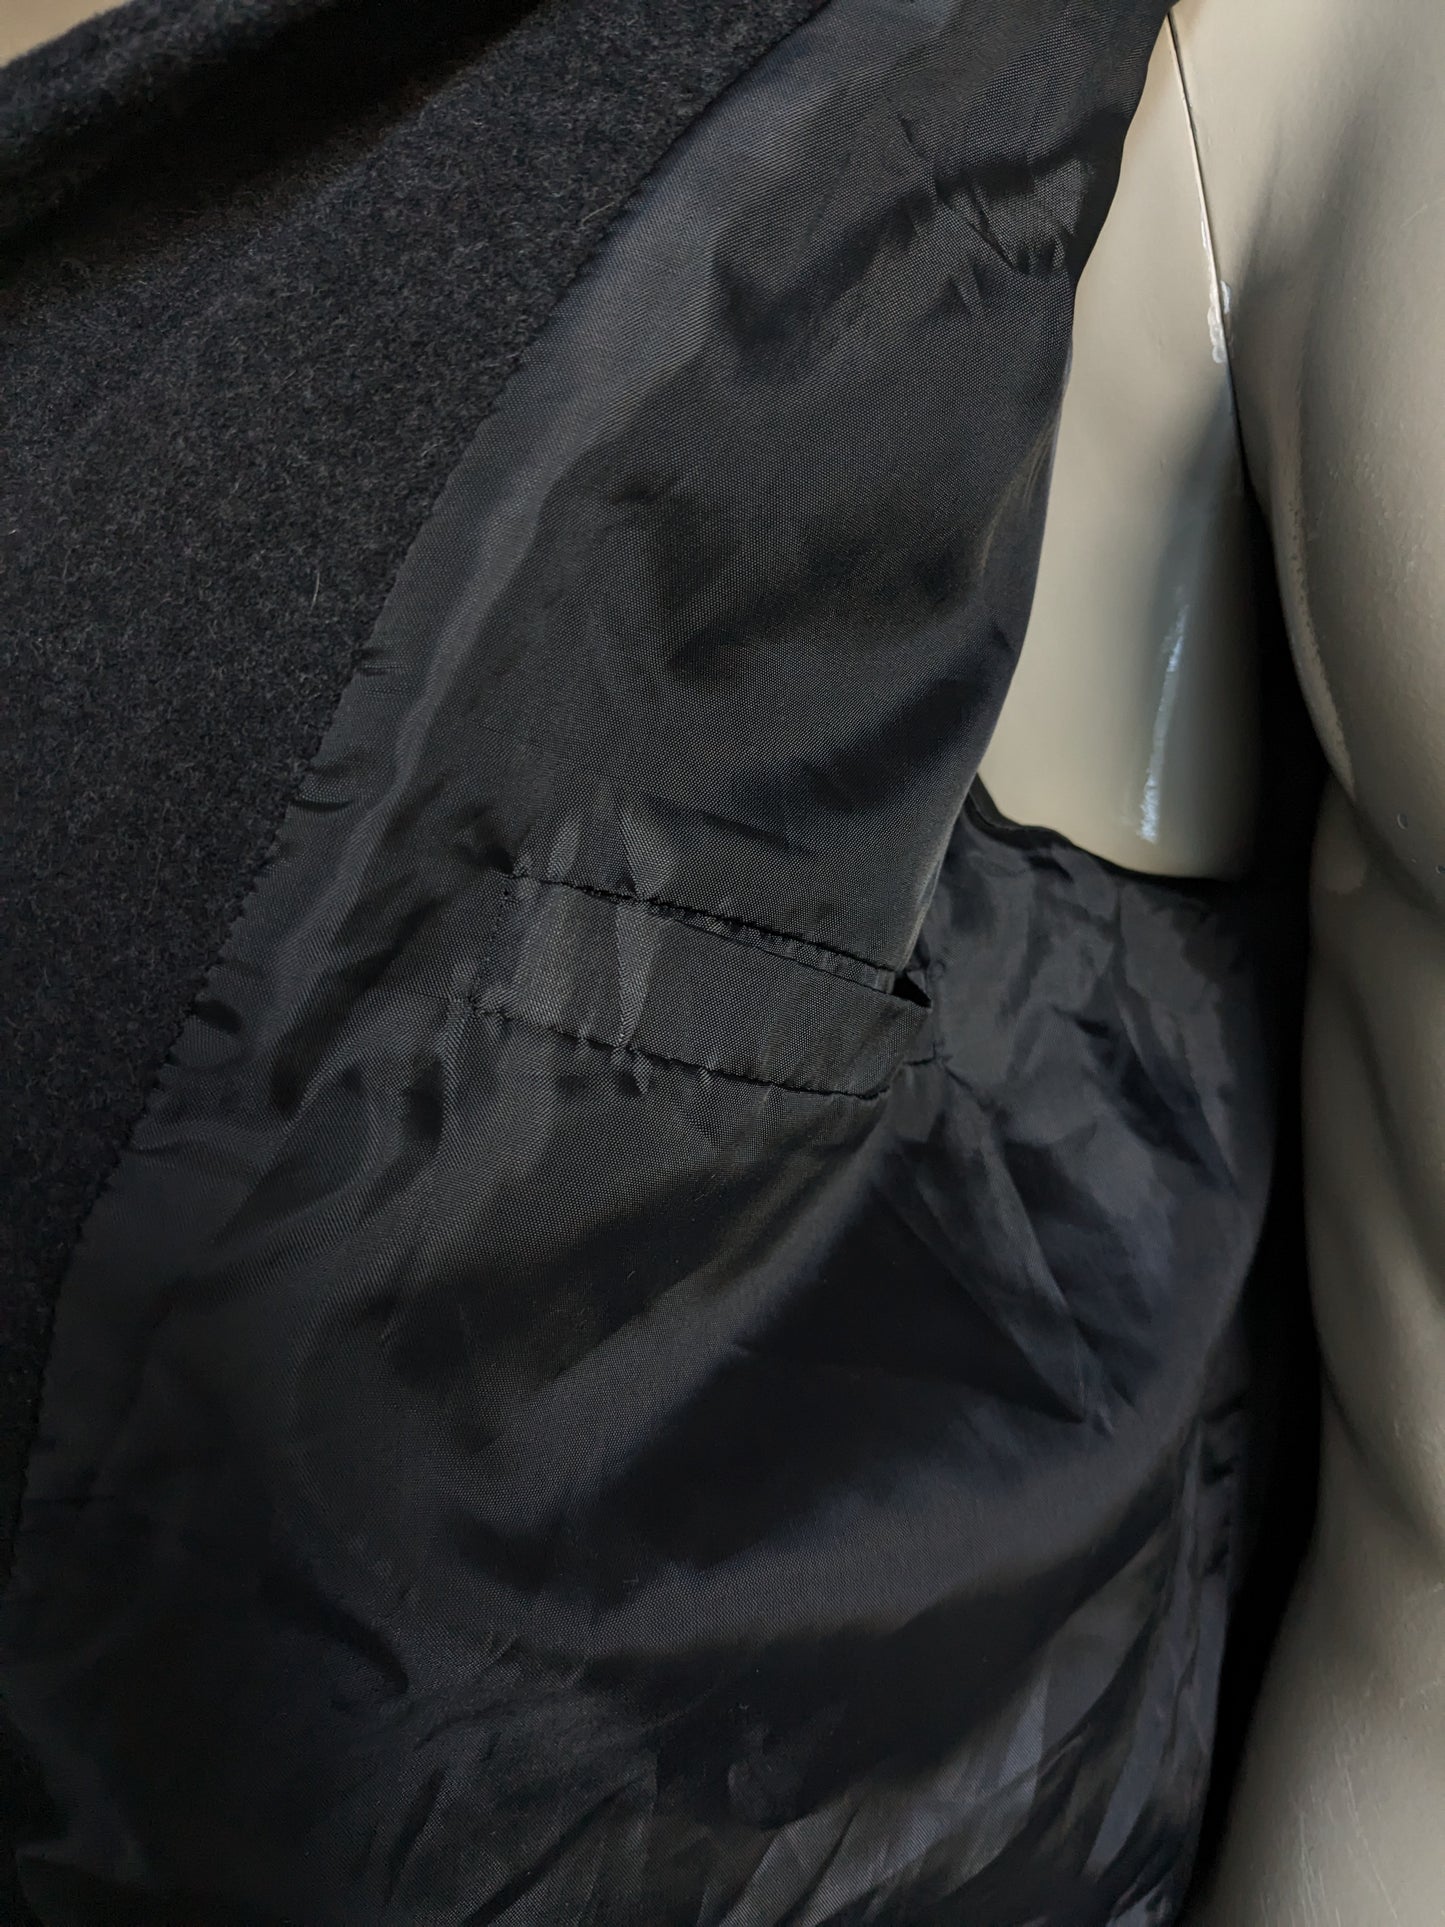 Martin Wool halb lange Jacke mit Knöpfen und Reißverschlussanwendungen trennen. Dunkelgrau. Größe 52 / L.